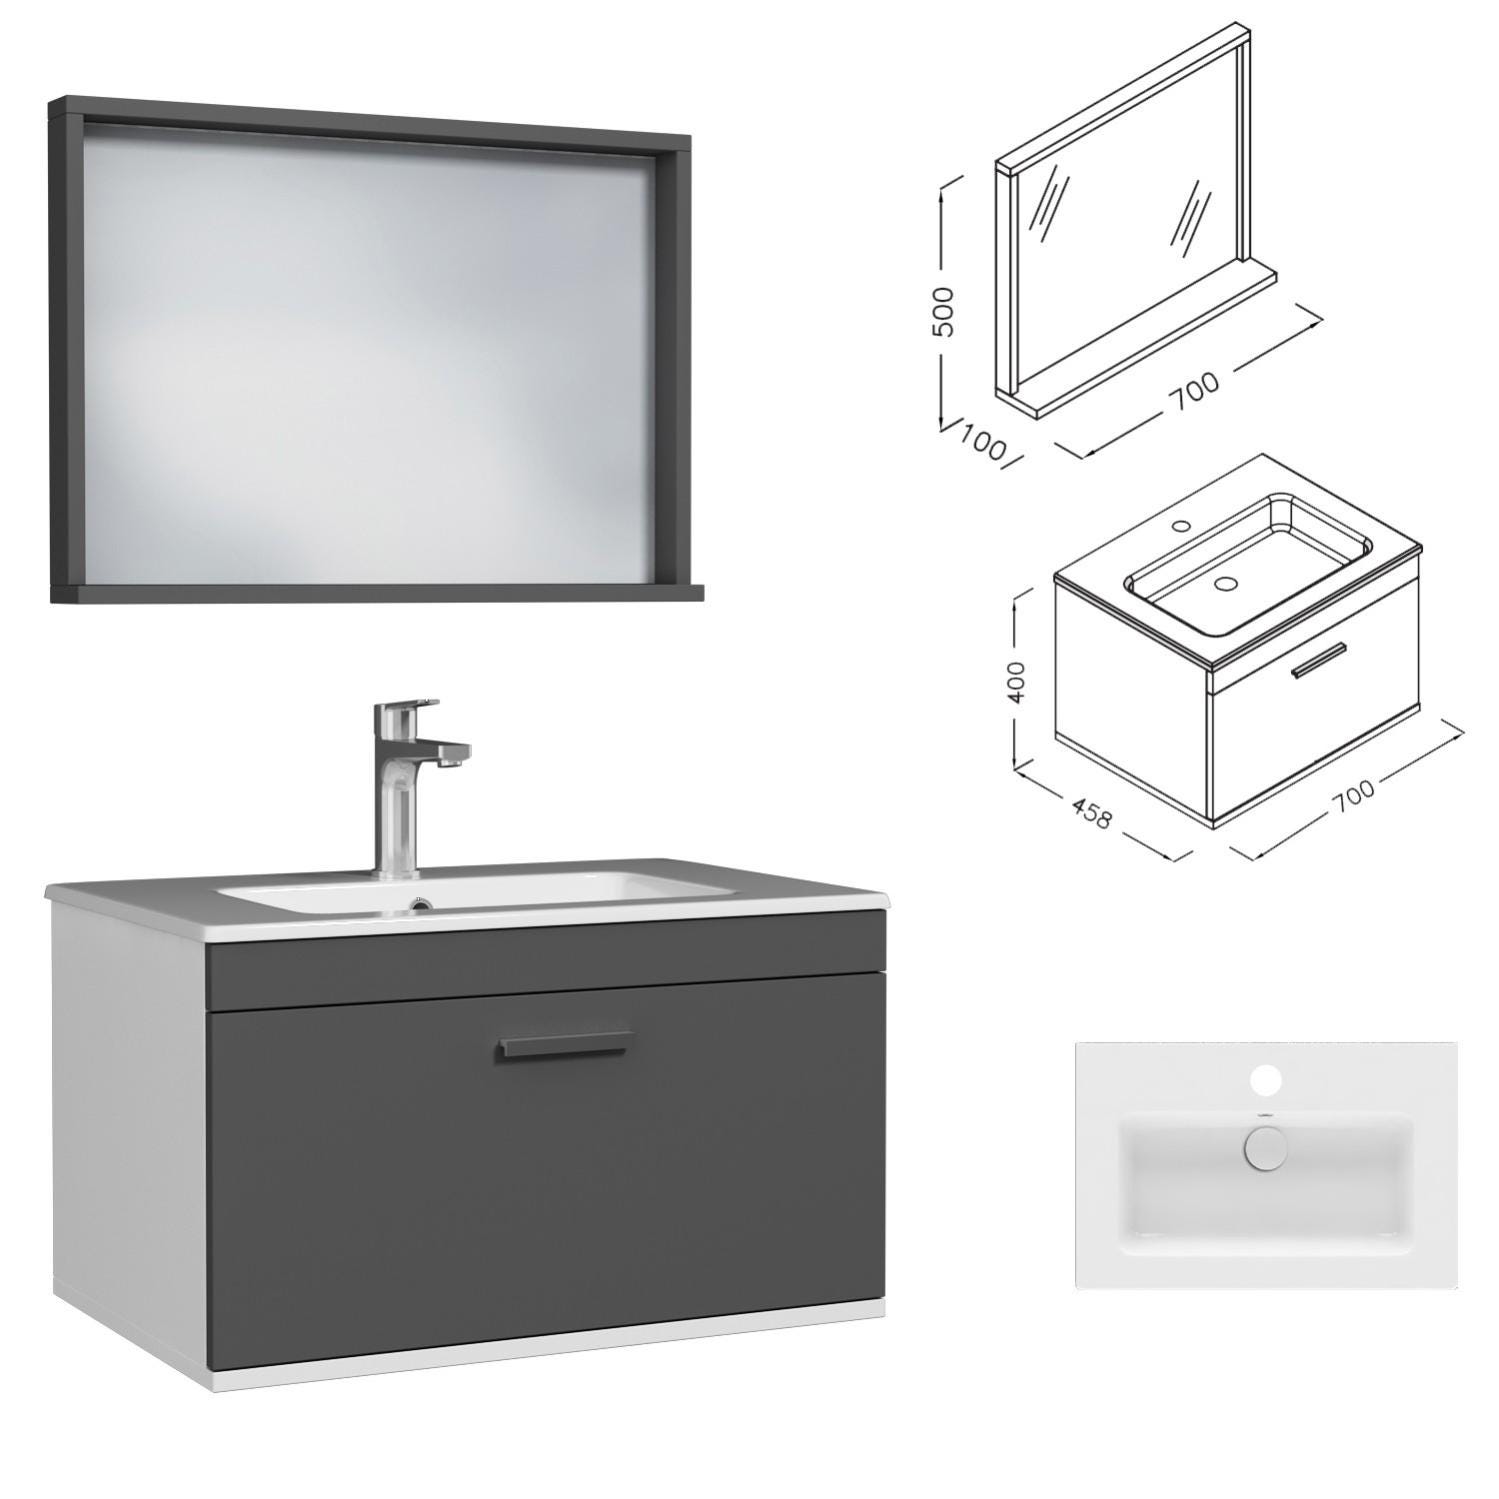 RUBITE Meuble salle de bain simple vasque 1 tiroir gris anthracite largeur 70 cm + miroir cadre 2